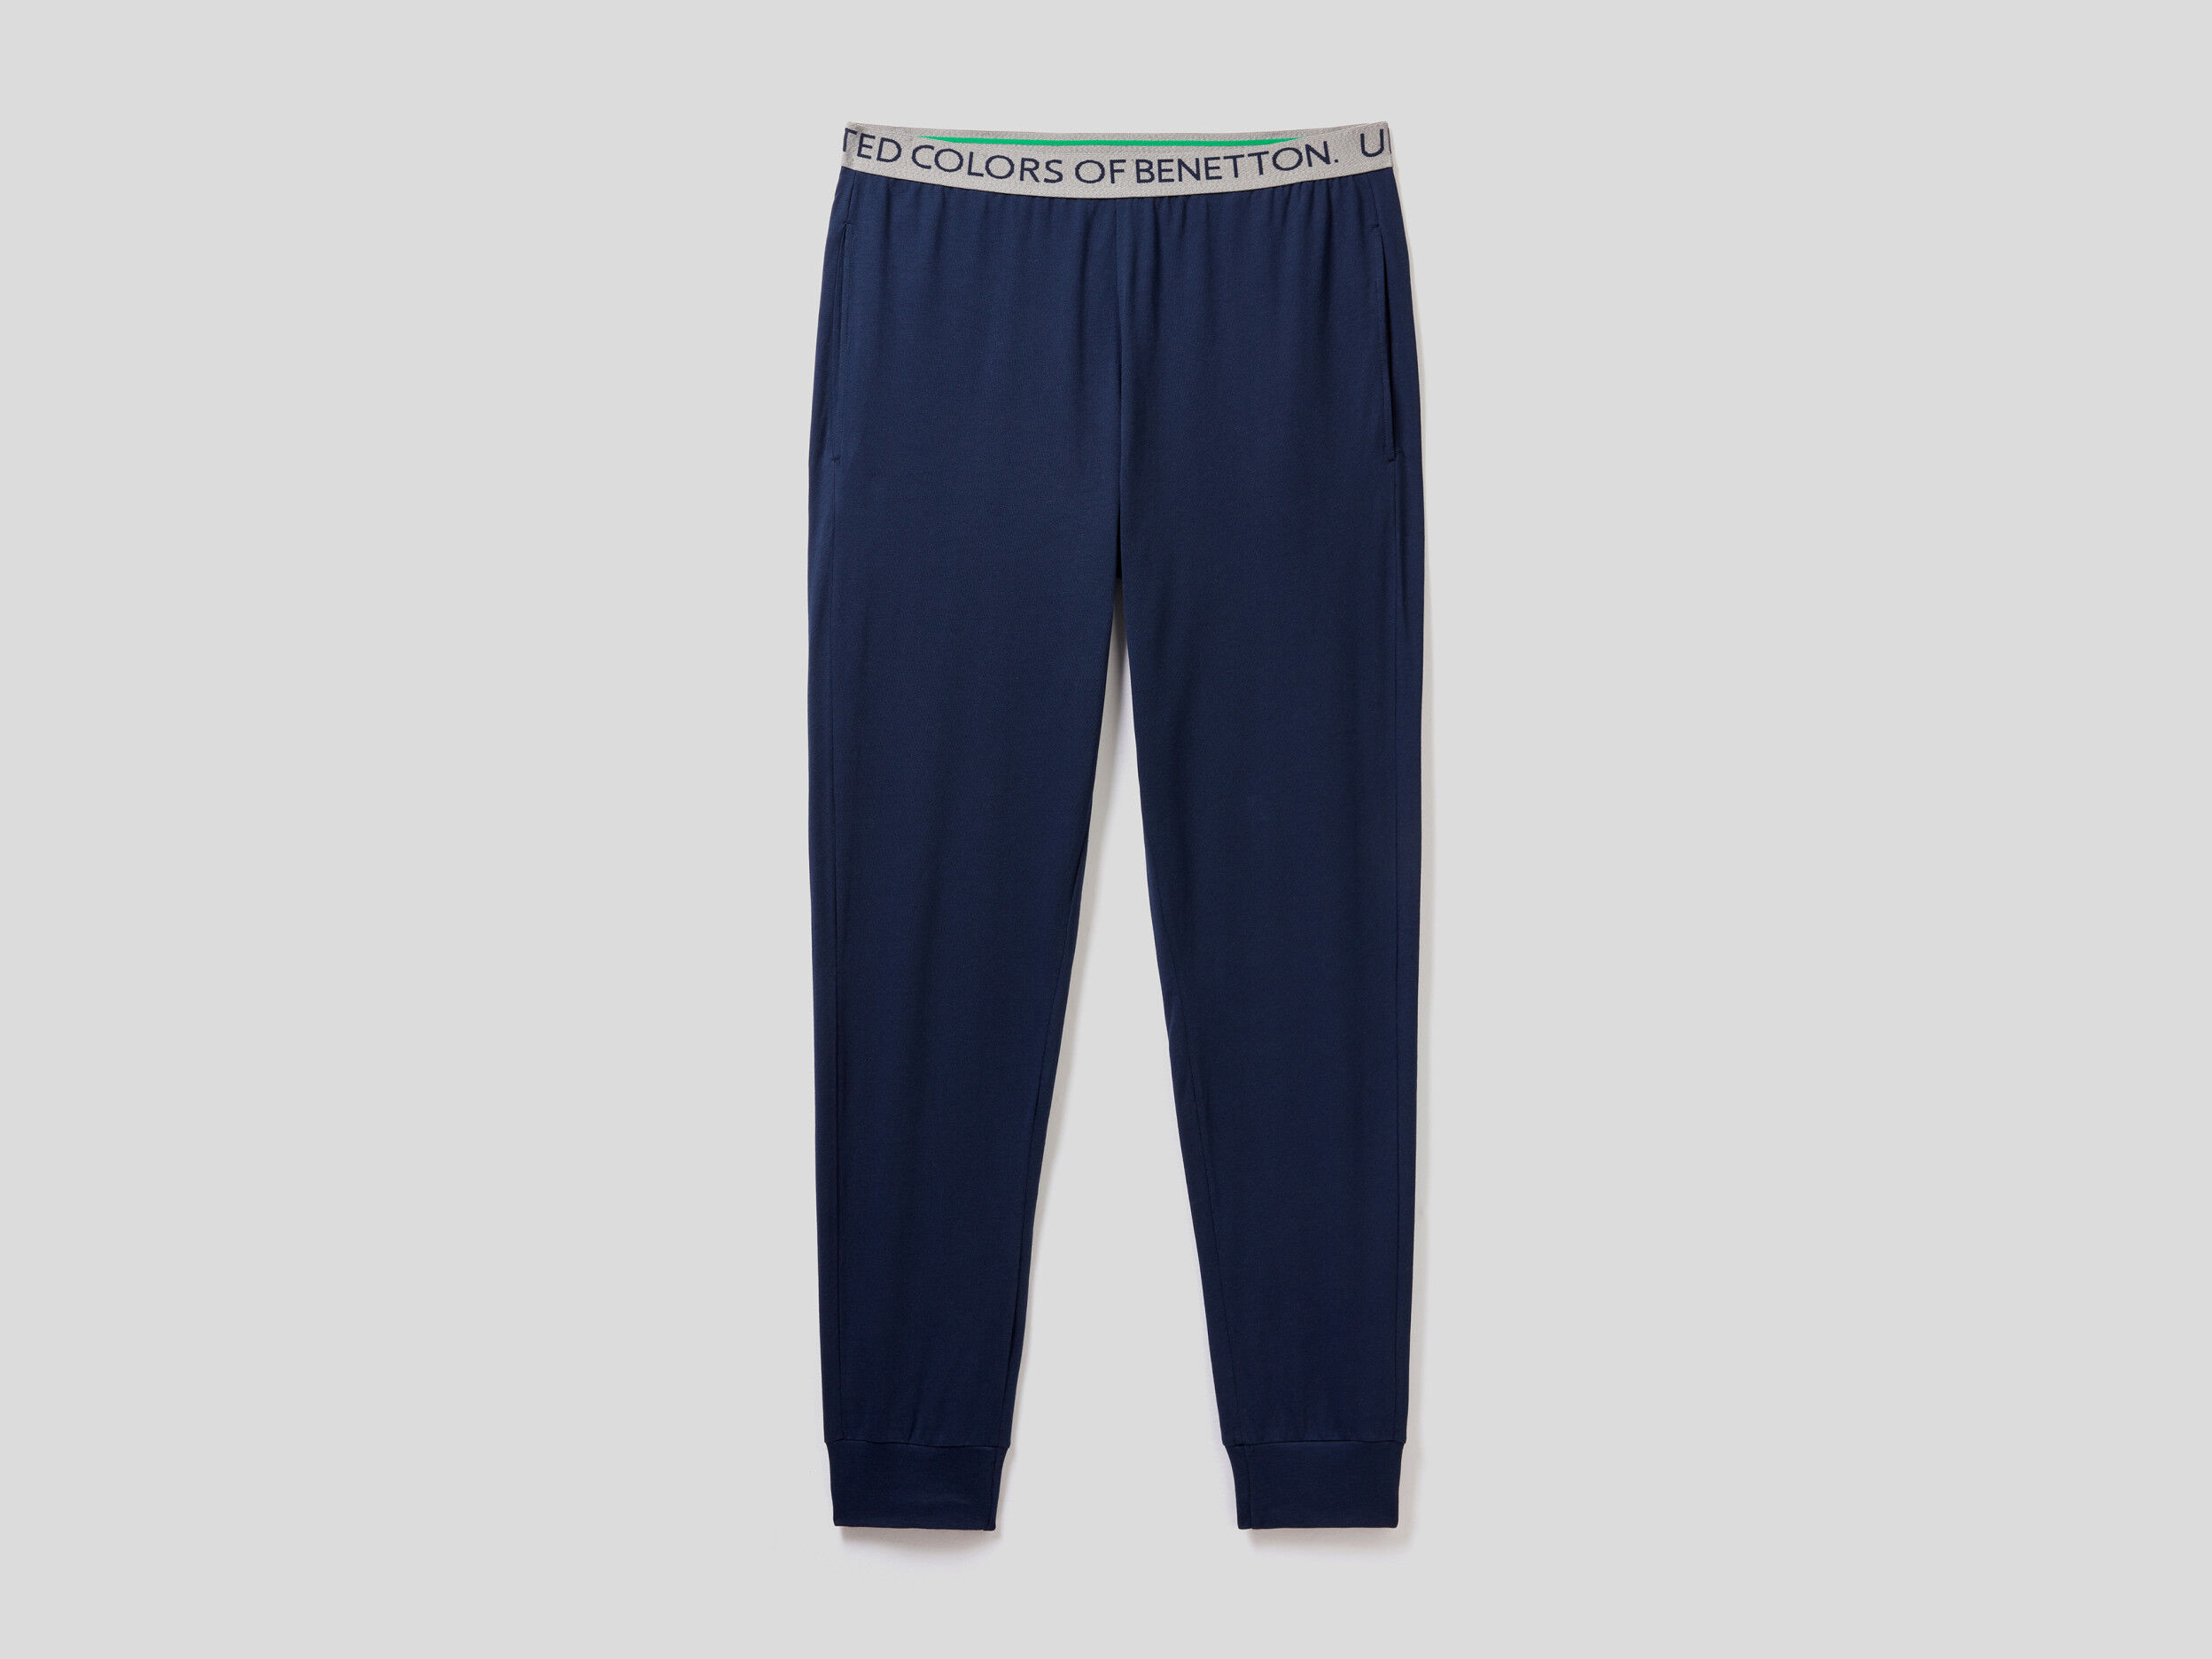 Pantaloni In Cotone Bio Stretch United Colors of Benetton Abbigliamento Pantaloni e jeans Pantaloni Pantaloni stretch 